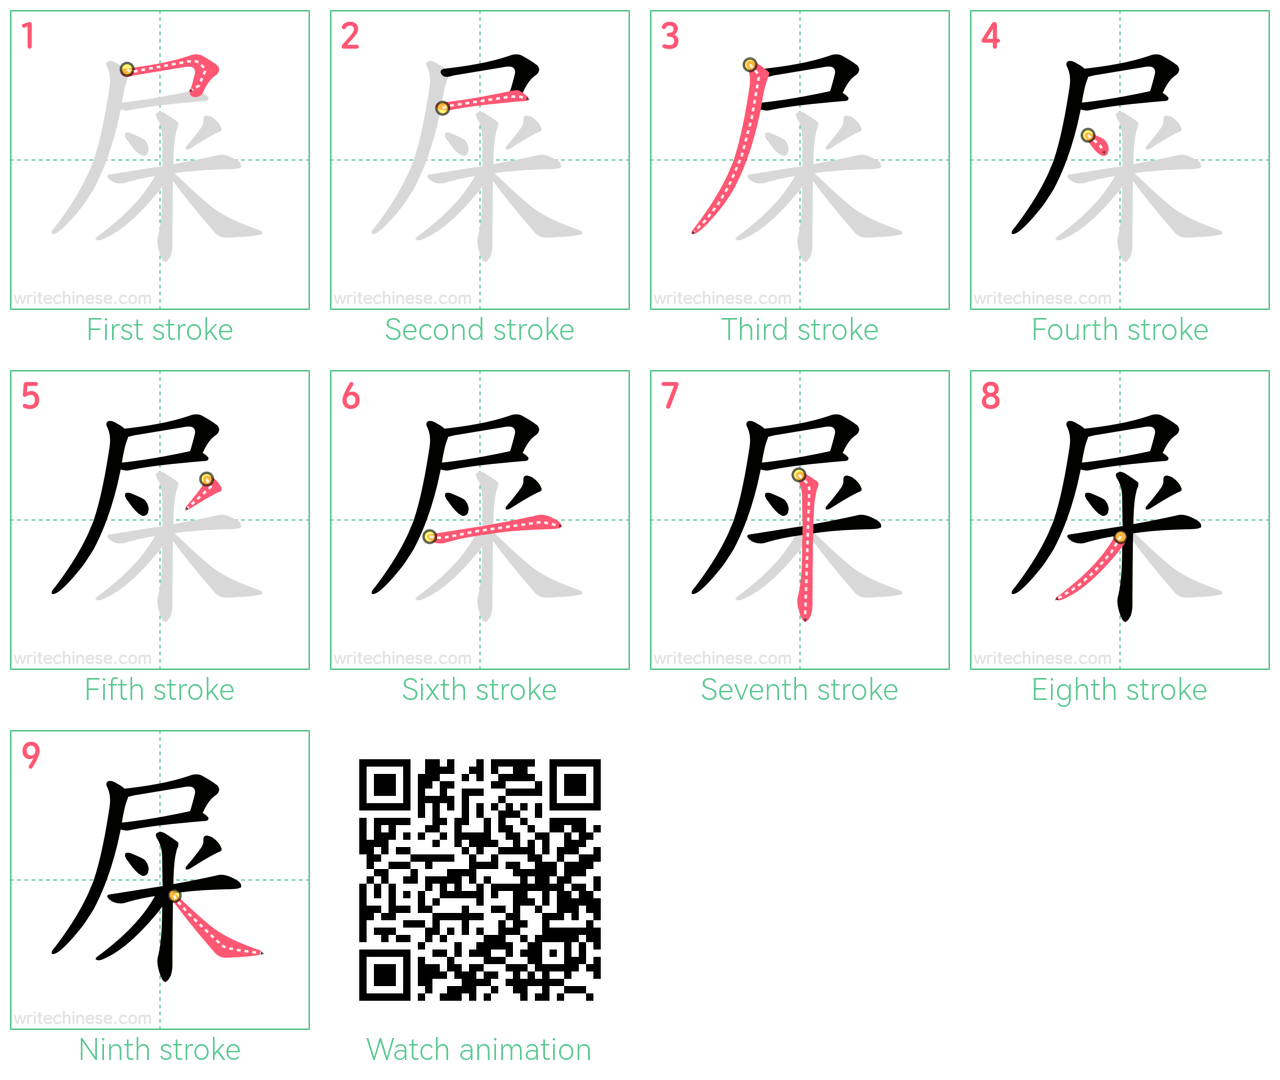 屎 step-by-step stroke order diagrams